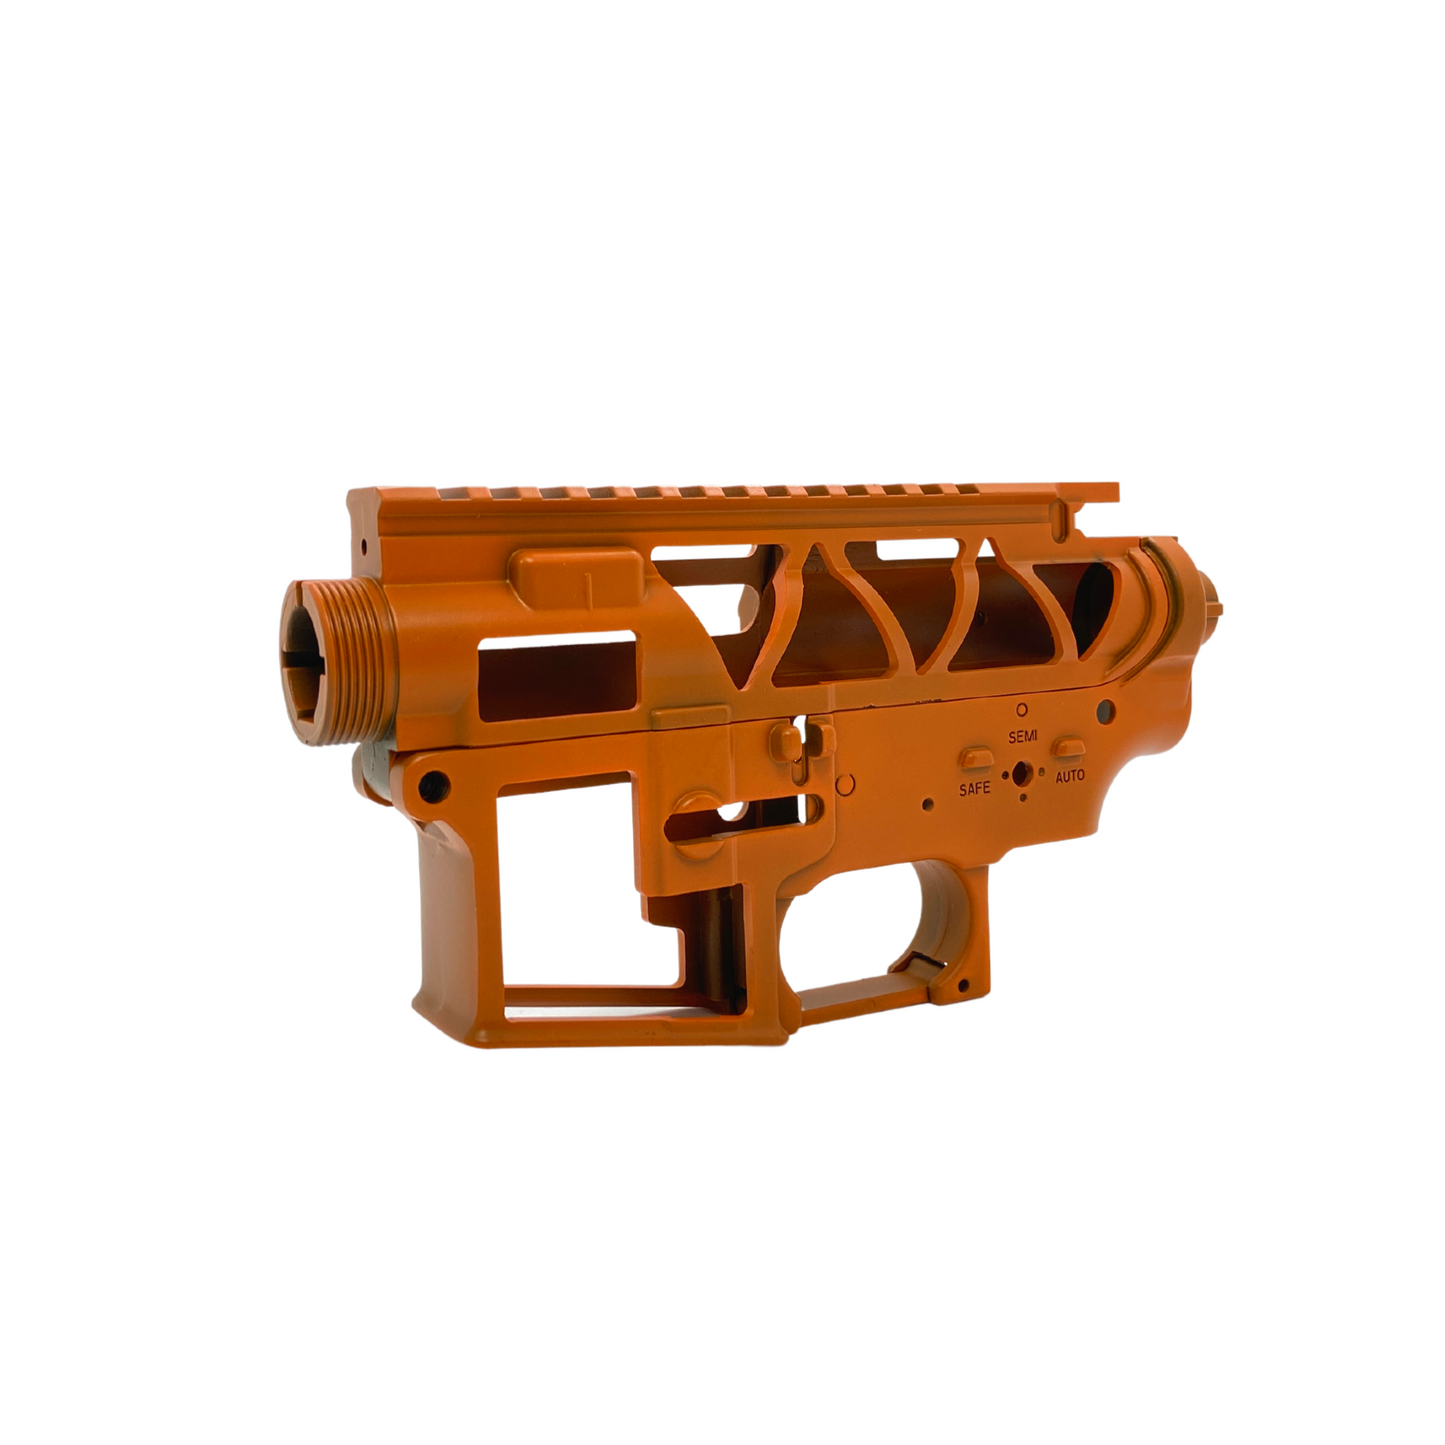 Custom Painted CNC V2 Receiver "Transparent Orange" for Gel Blaster